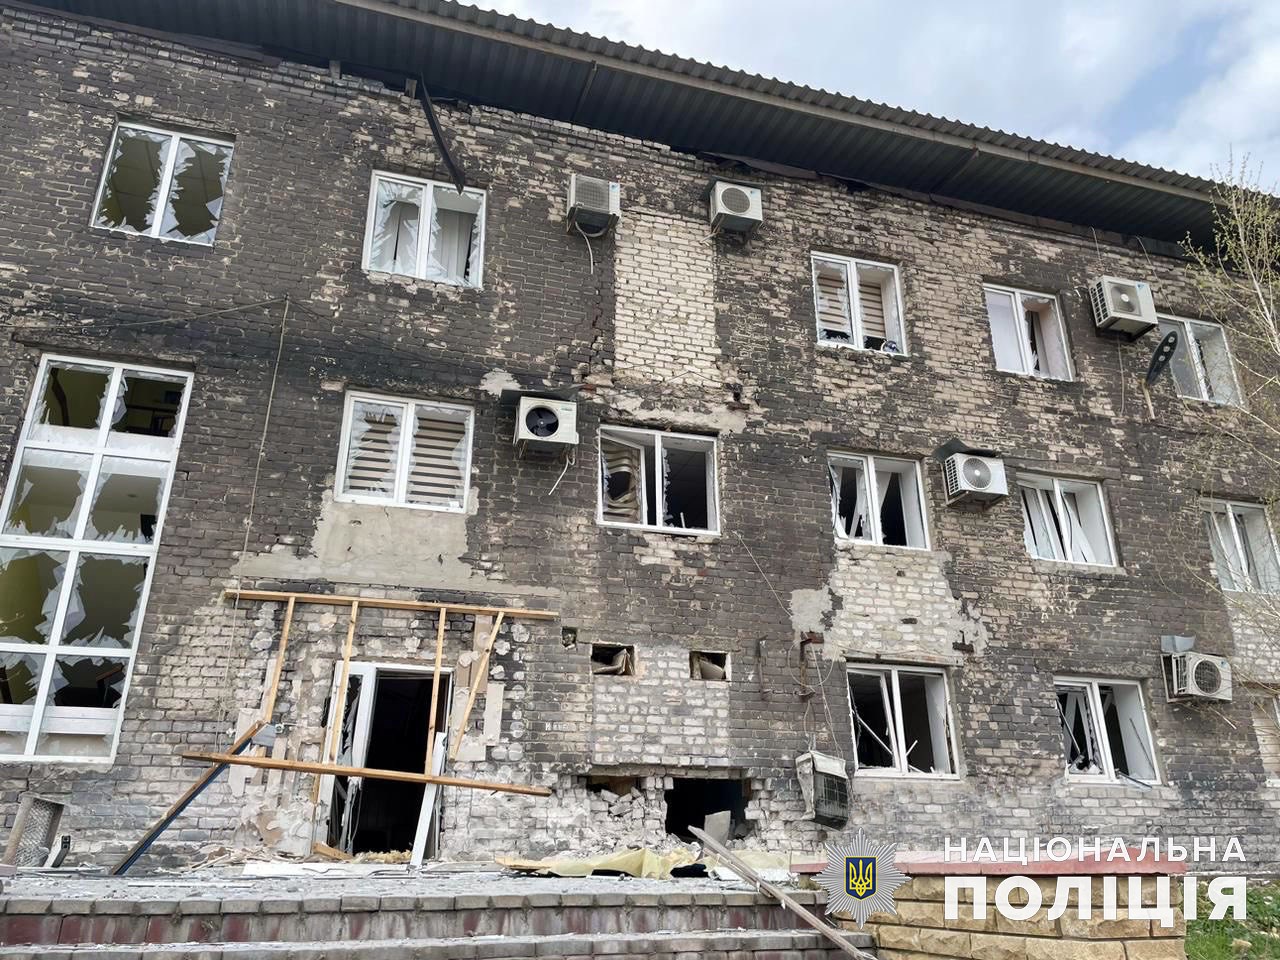 Ще 7 місцевих поранені: за день росіяни обстріляли 12 міст і сіл Донеччини (ФОТО, ЗВЕДЕННЯ) 3